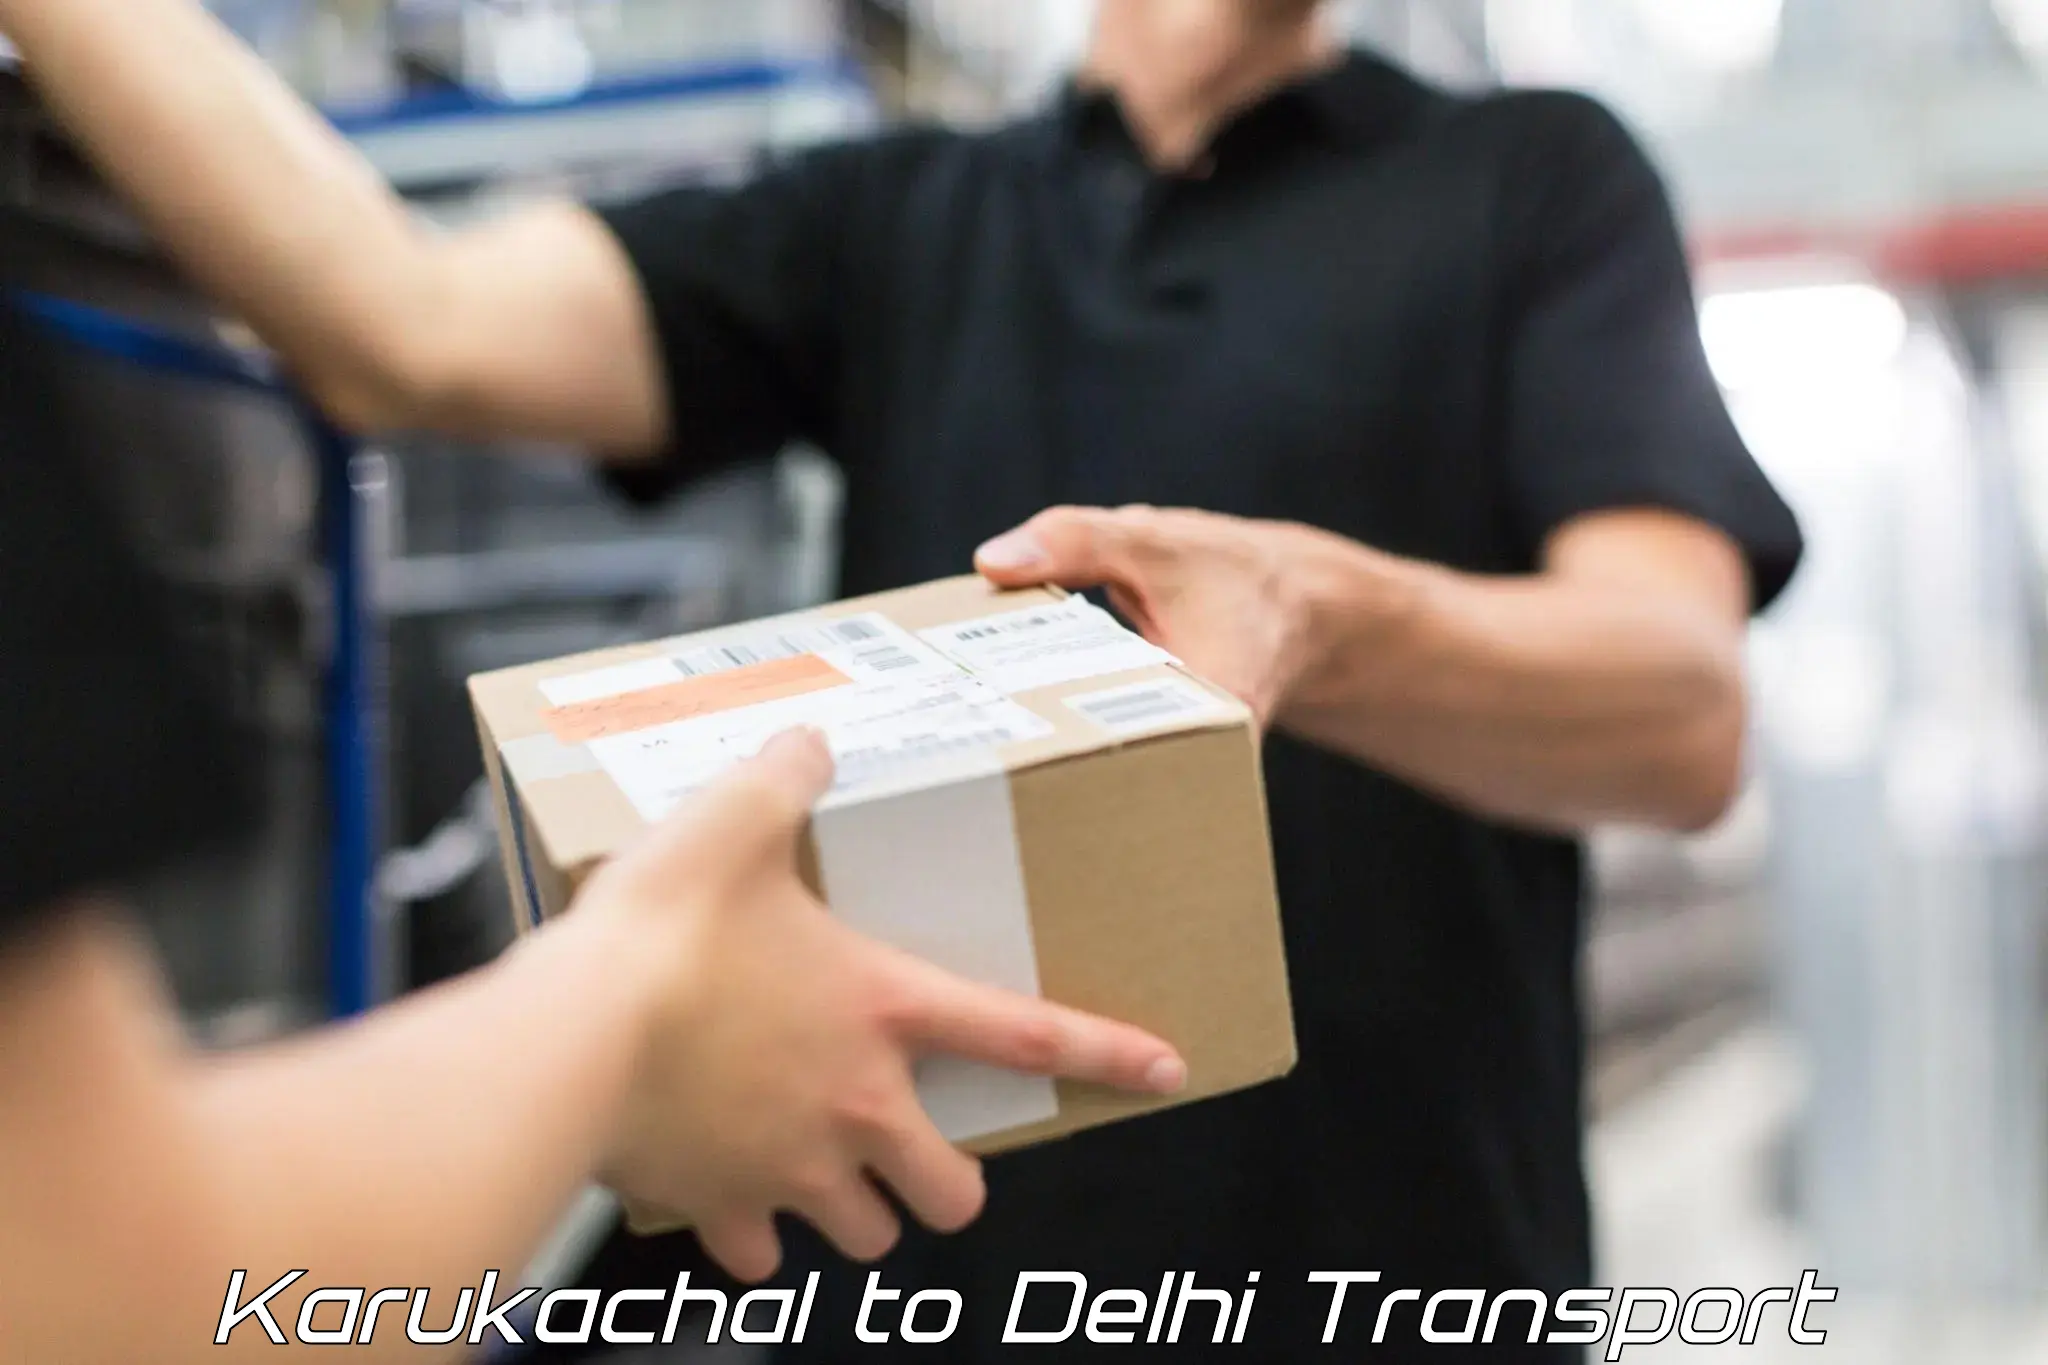 Nearest transport service Karukachal to Delhi